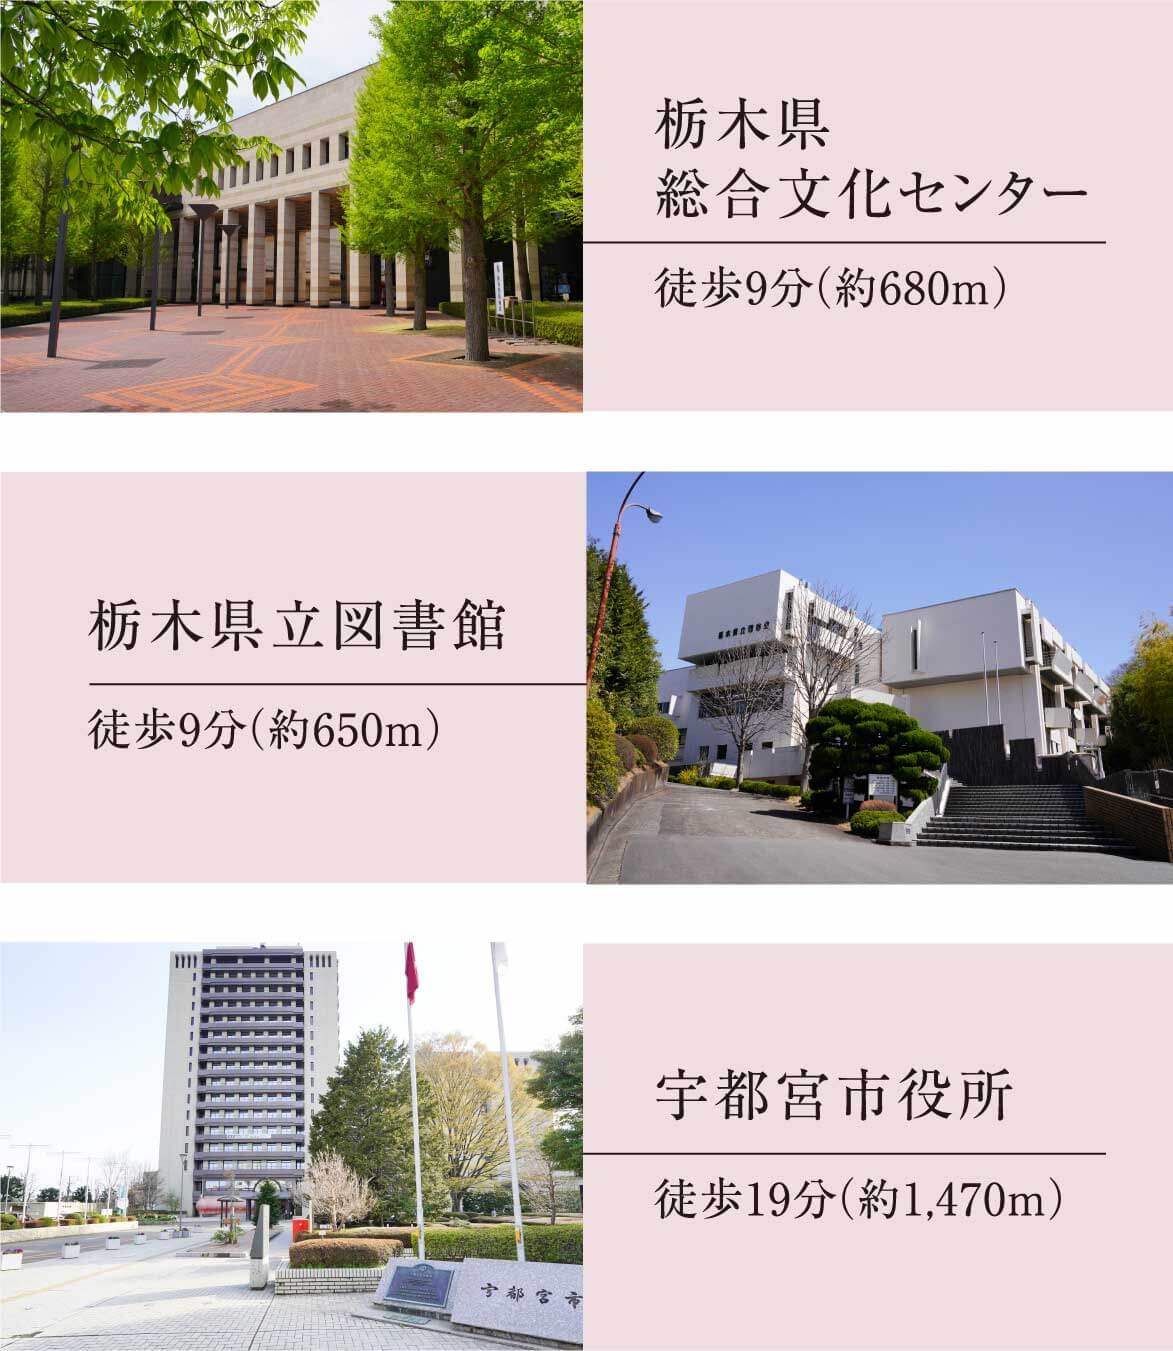 栃木県総合文化センター、栃木県立図書館、宇都宮市役所